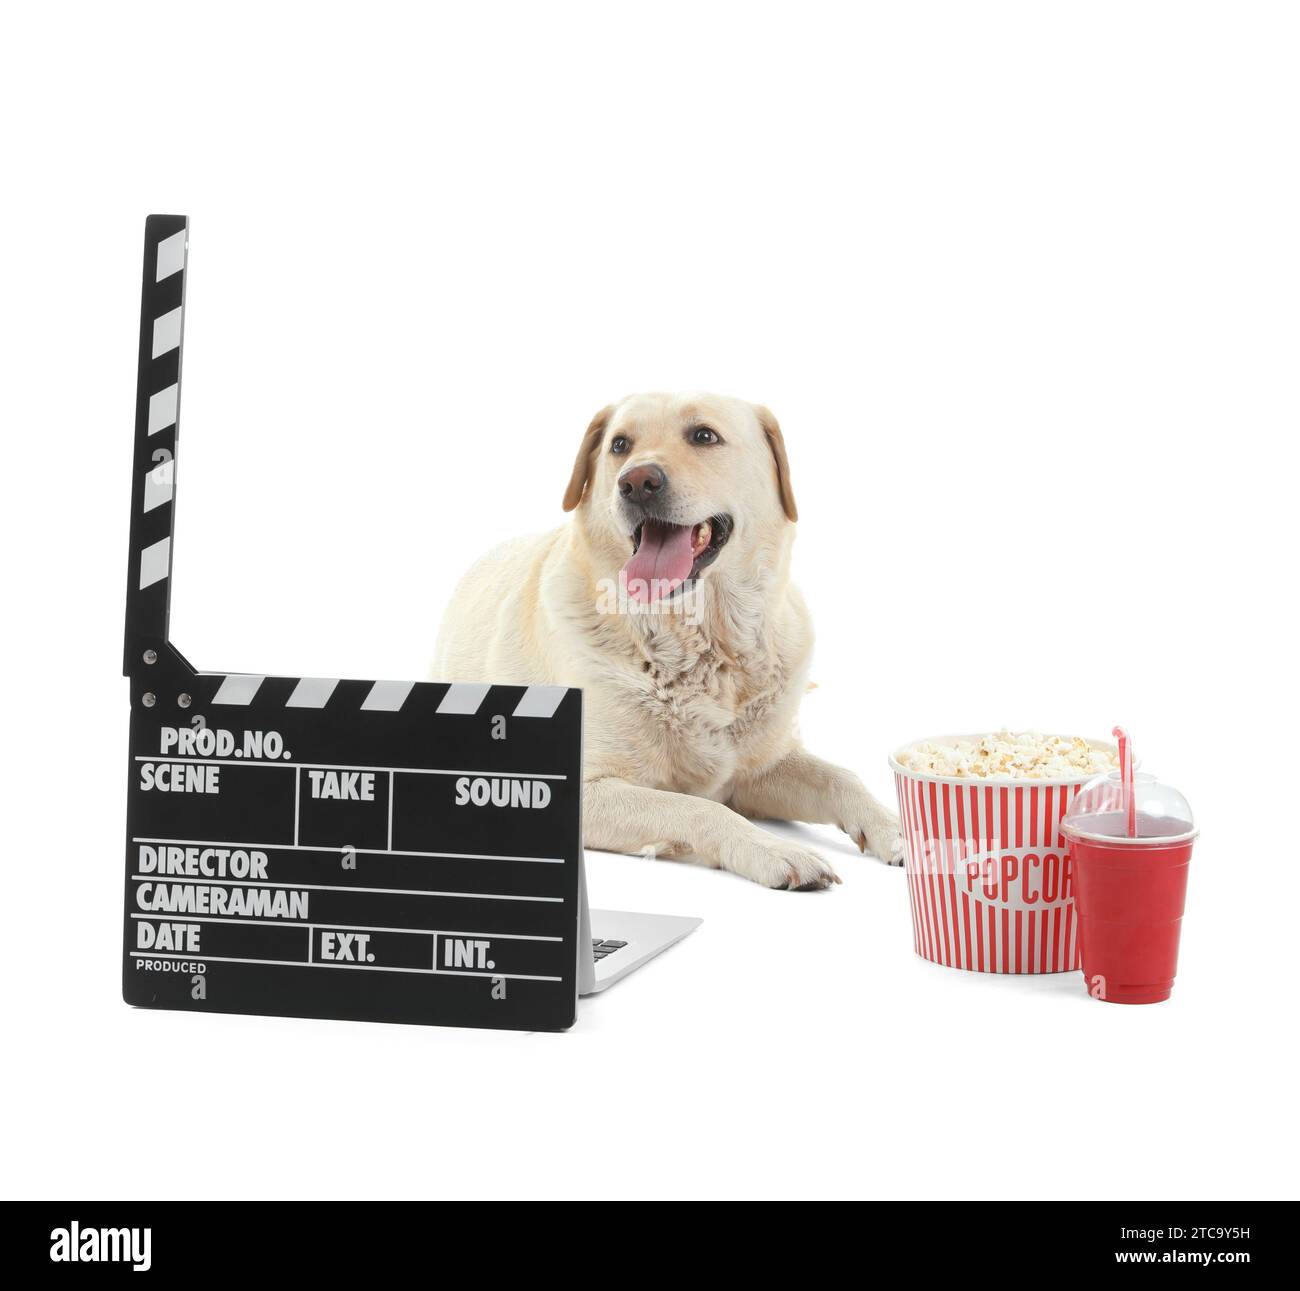 Chien Labrador mignon avec seau de pop-corn, tasse de soda et clapperboard couché sur fond blanc Banque D'Images